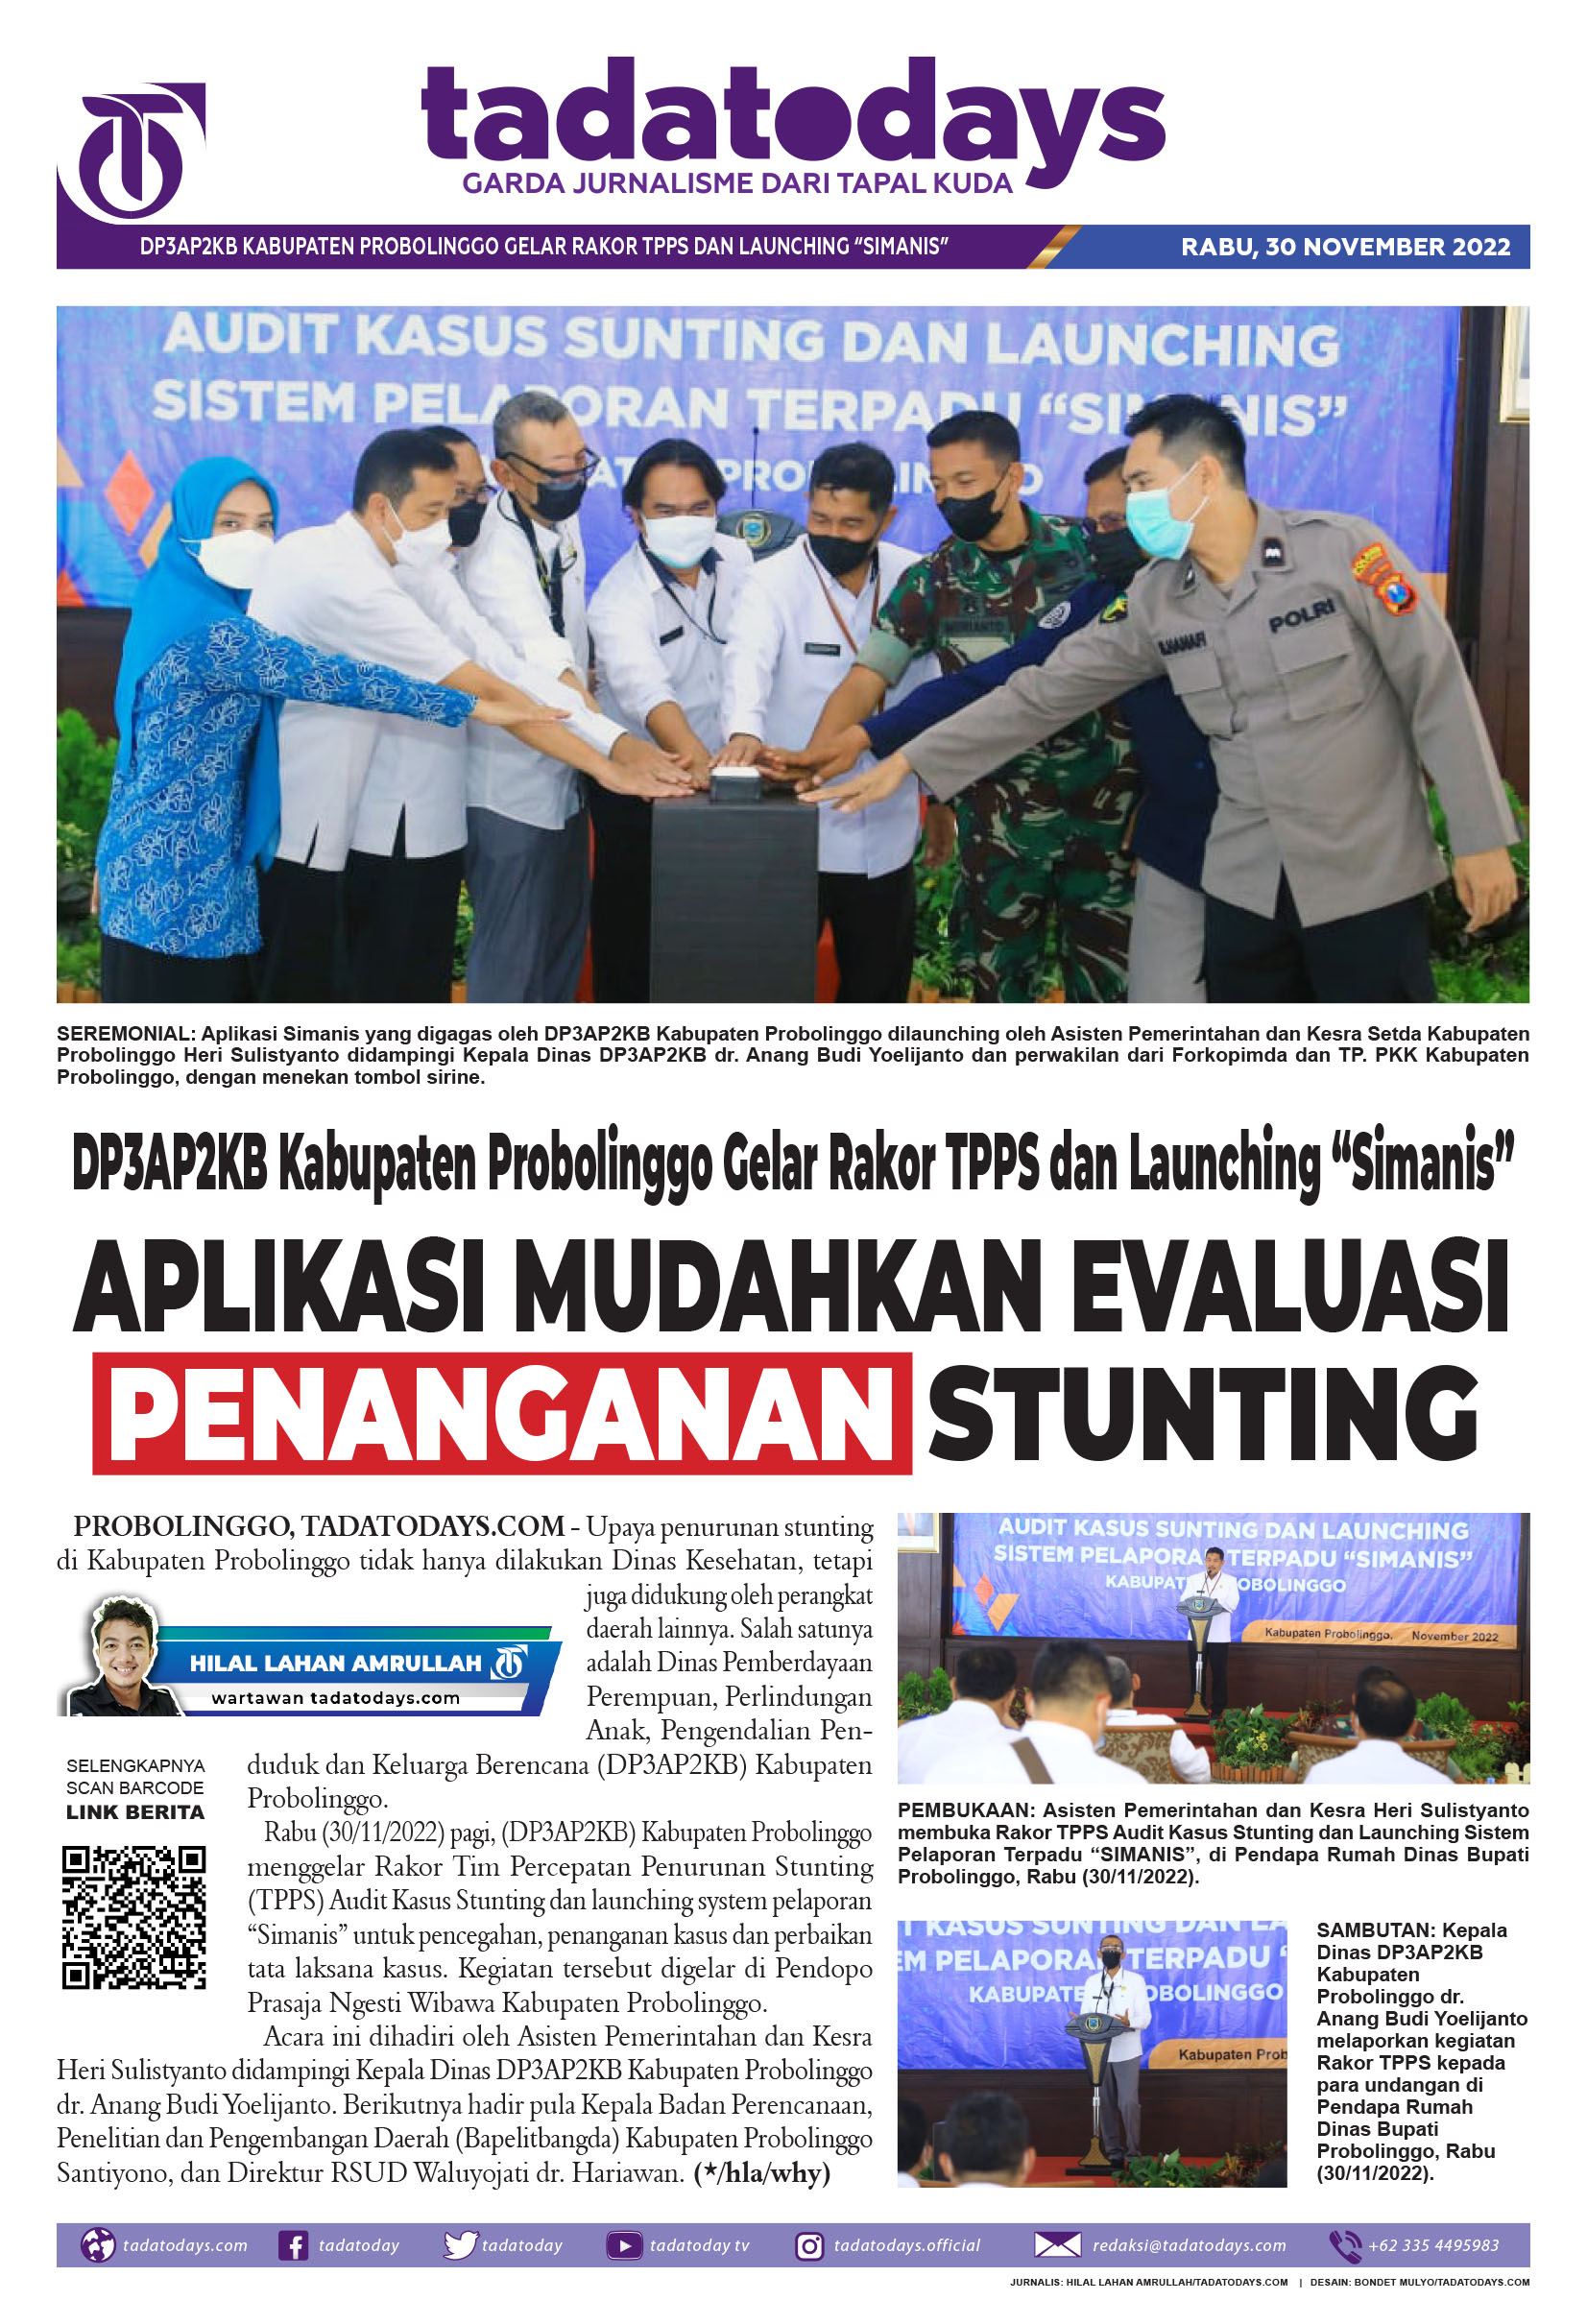 DP3AP2KB Kabupaten Probolinggo Menggelar Rakor TPPS dan Launching “Simanis”